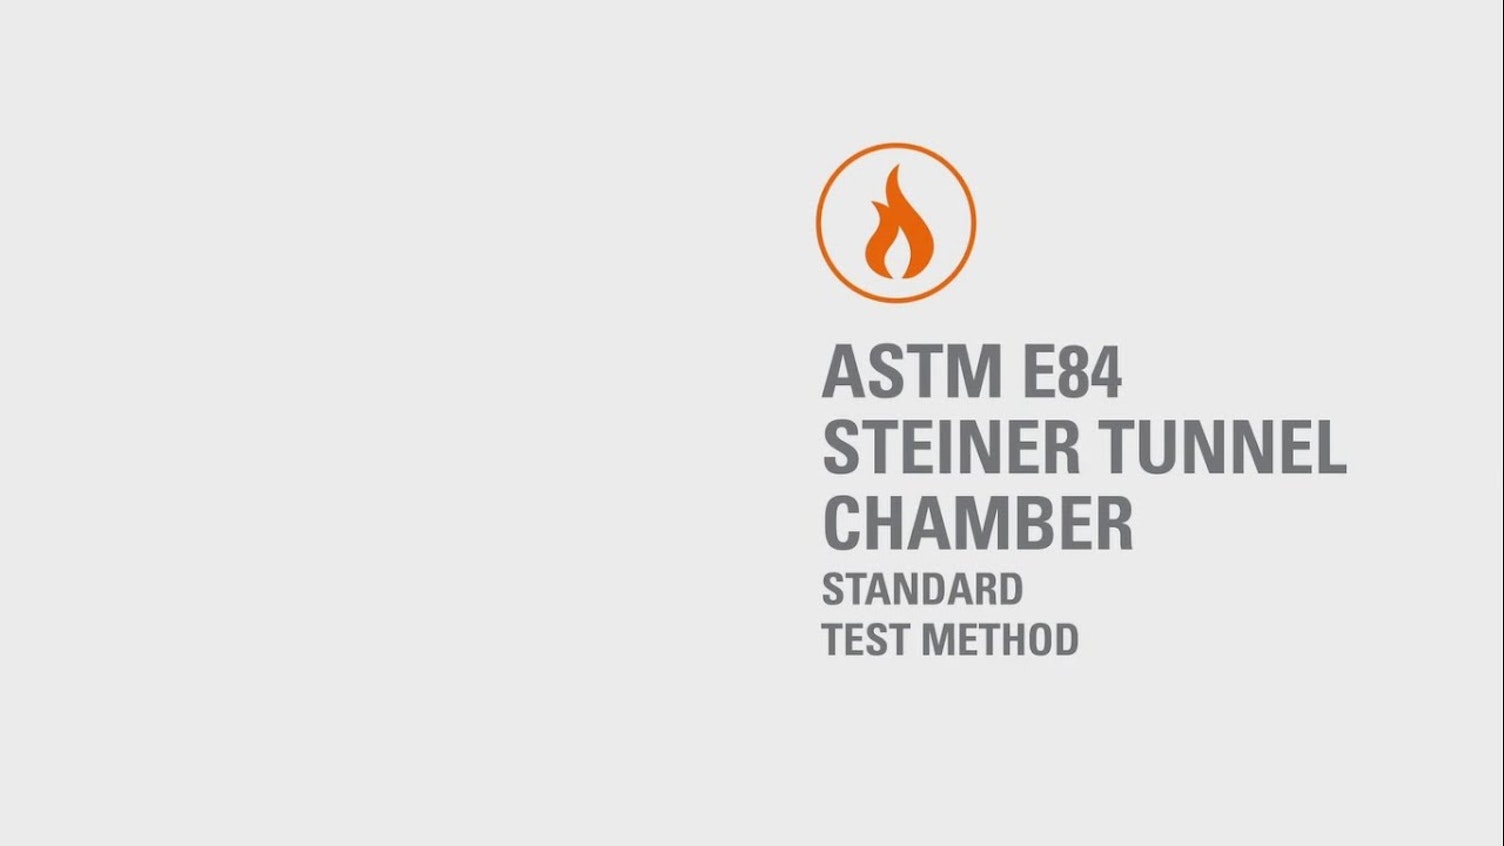 Steiner Tunnel Chamber - ASTM E84